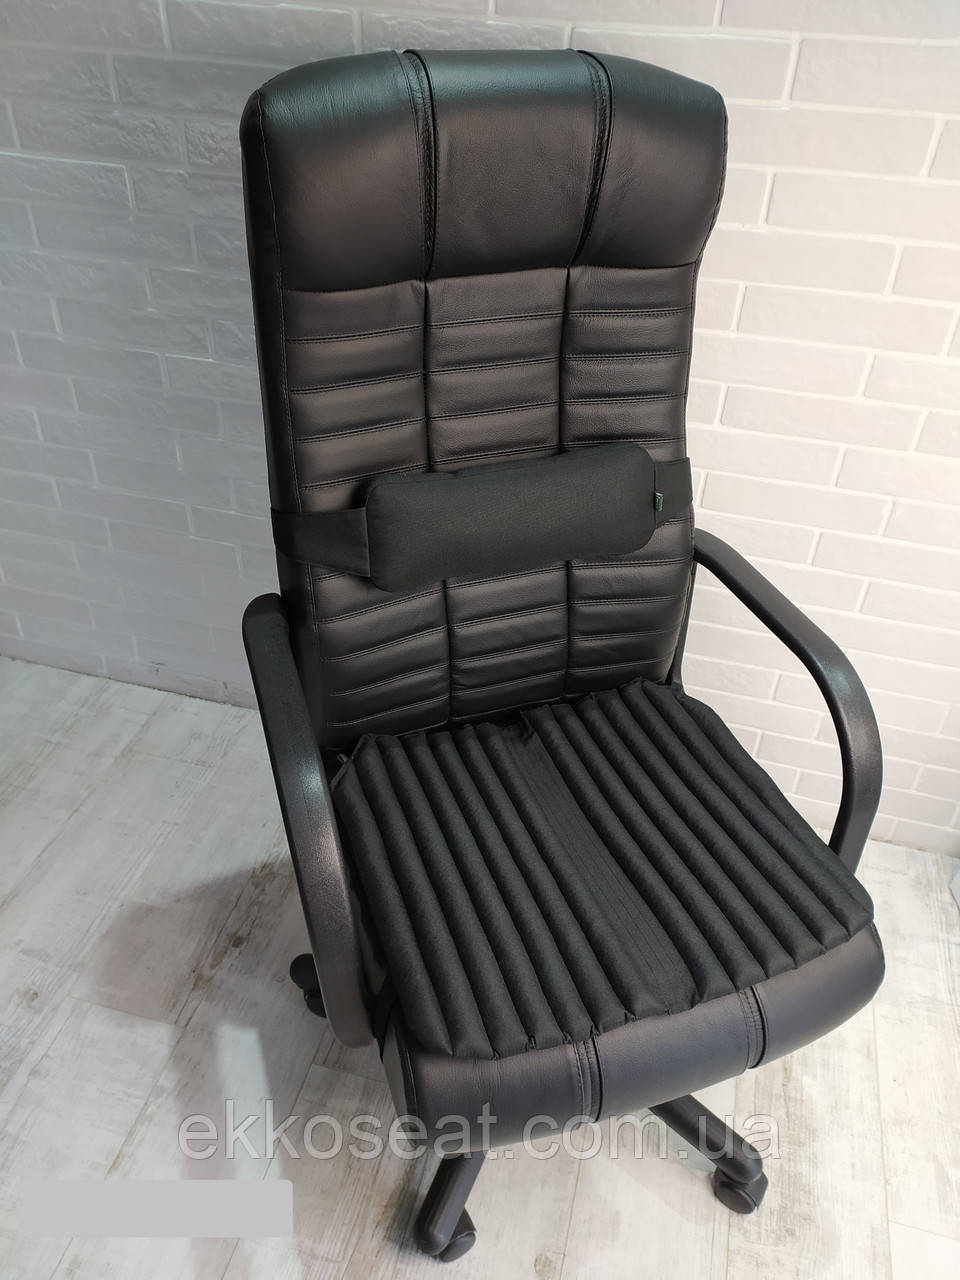 Ортопедичні подушки EKKOSEAT на офісне крісло керівника (КОМПЛЕКТ)